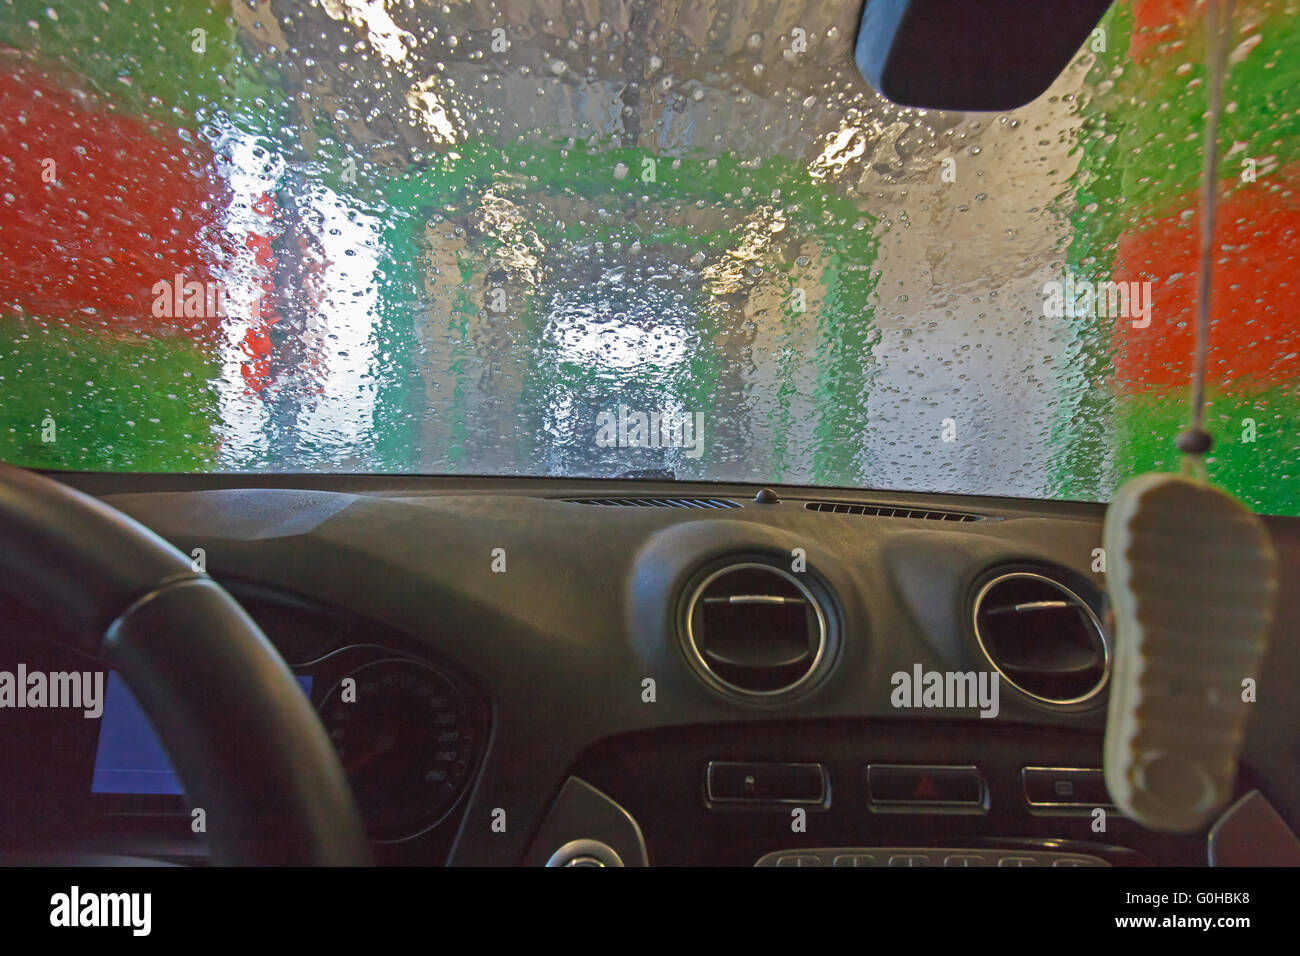 De lavage automatique. vue depuis la voiture d'une voiture passant la rondelle (flou, effet flou). Banque D'Images